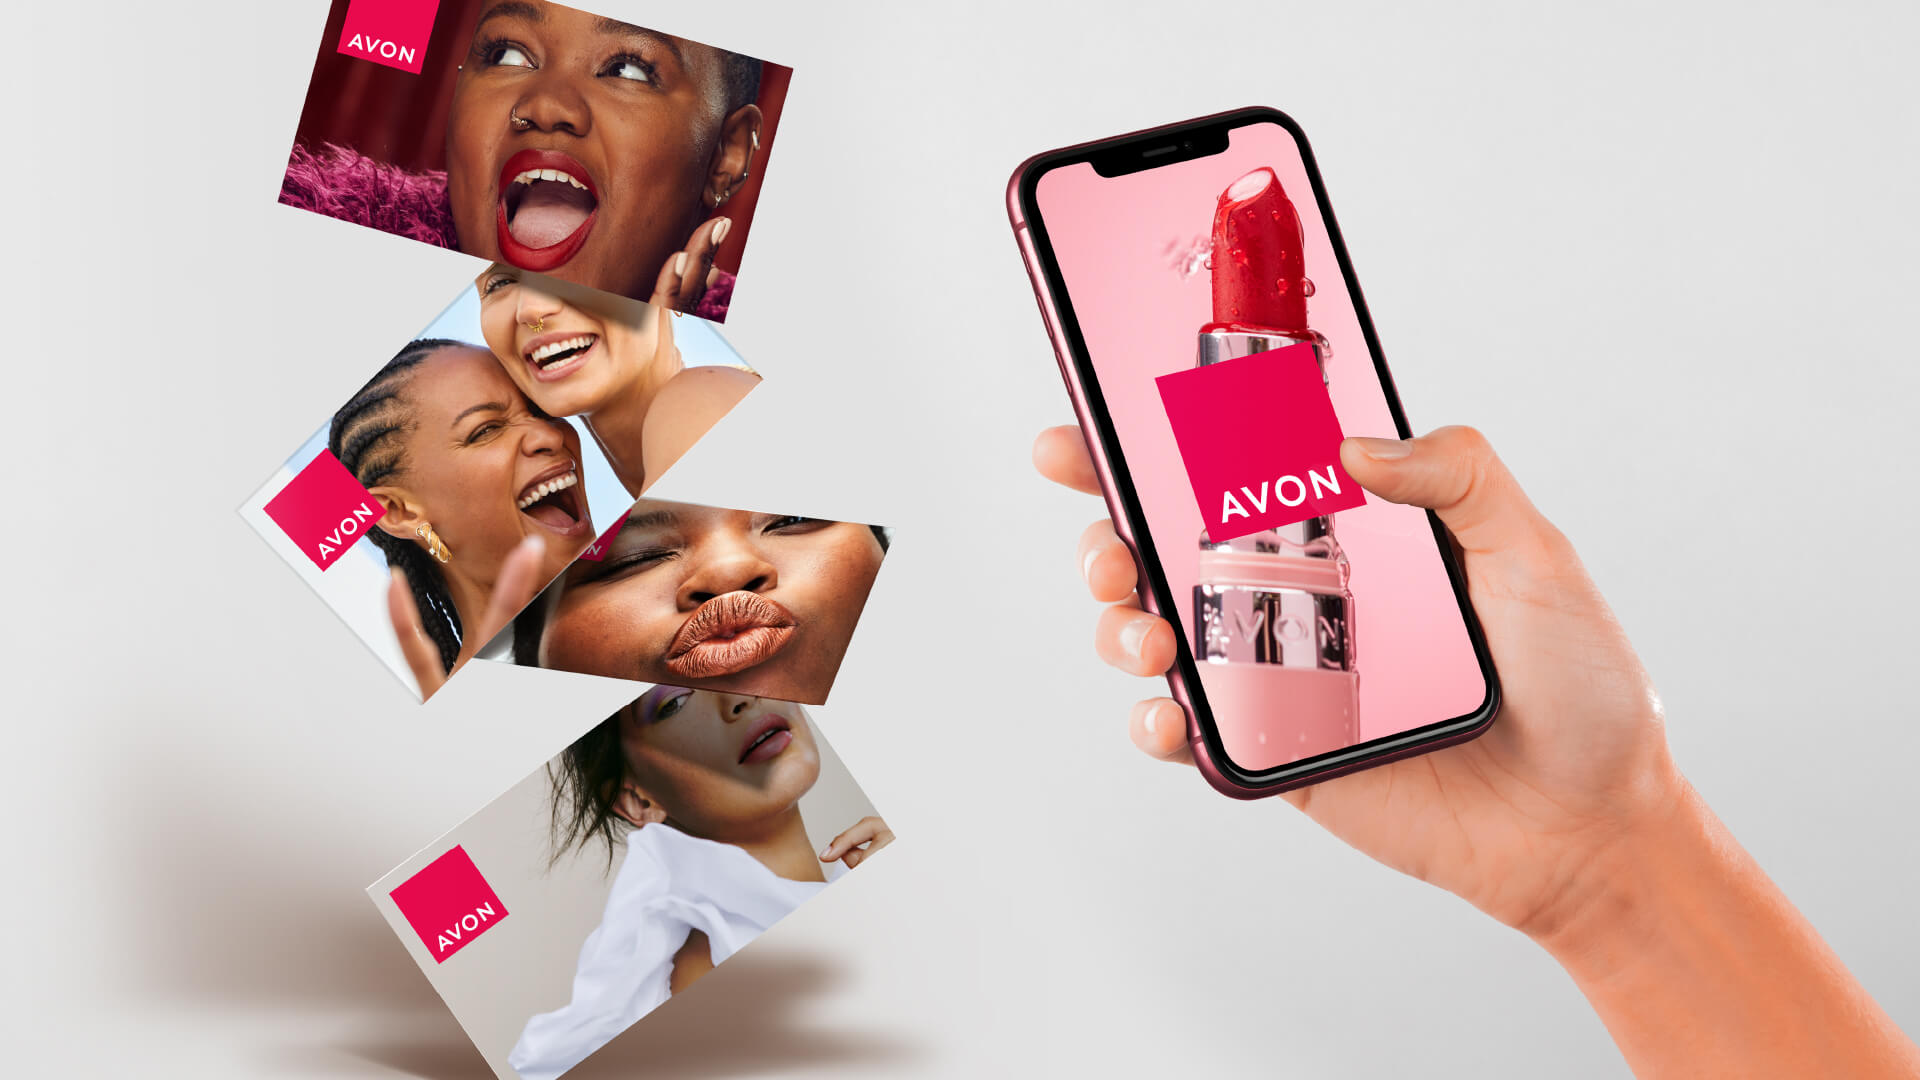 Avon brand world design digital